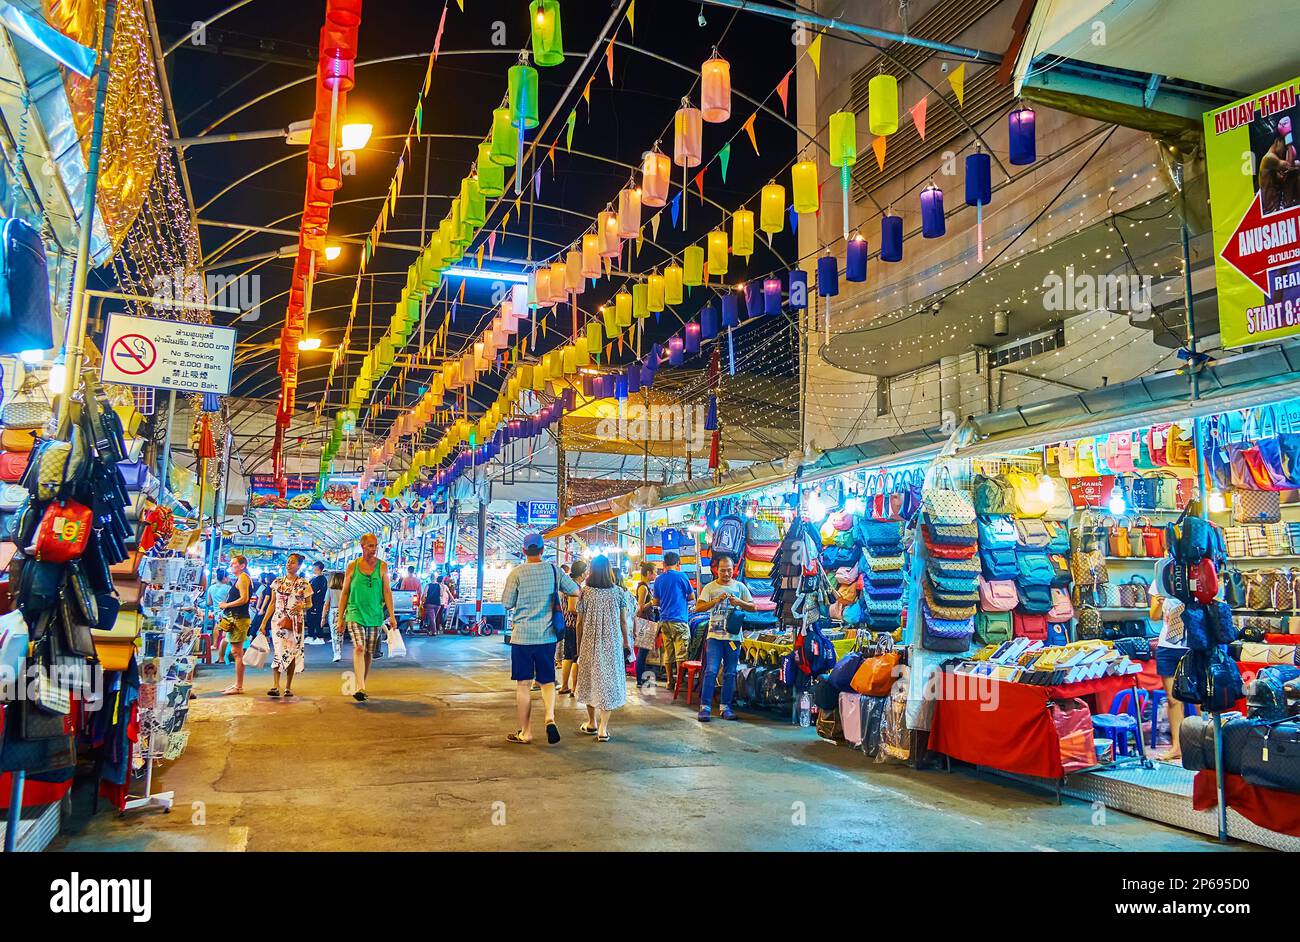 CHIANG MAI, THAILAND - 3. MAI 2019: Die Gasse des Nachtmarkts von Anusarn, dekoriert mit Lichtern und farbigen Papierlaternen, am 3. Mai in Chiang Mai Stockfoto